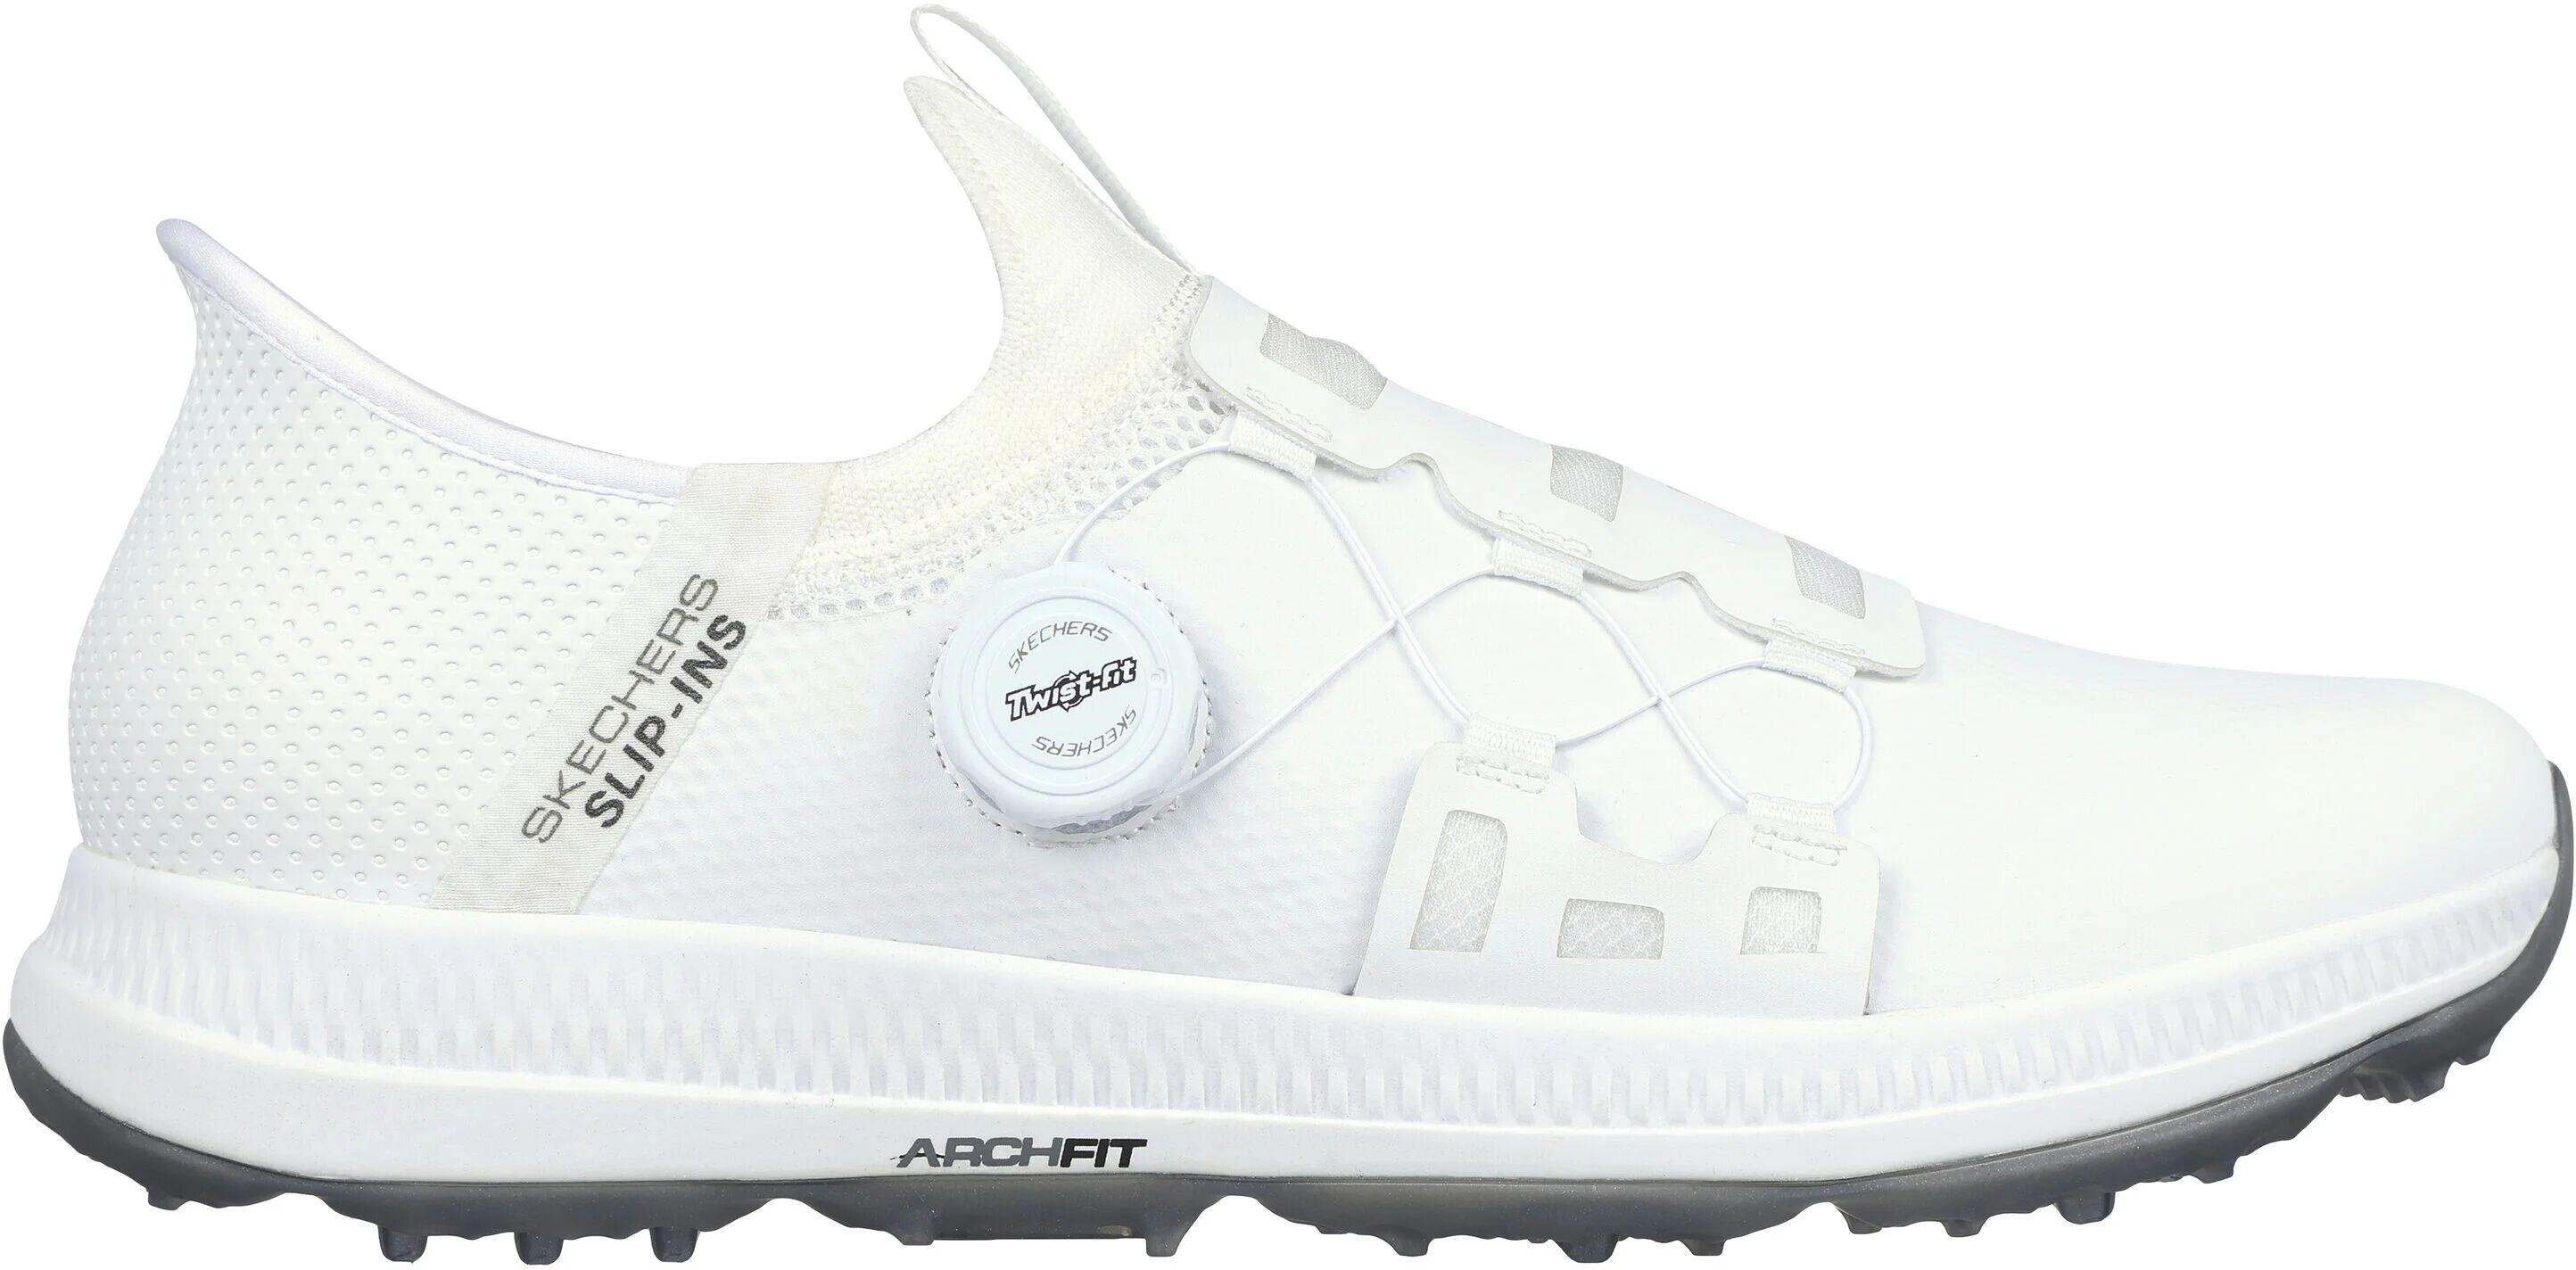 Skechers GO GOLF Elite 5 Slip In Golf Shoes - White - 11 - MEDIUM